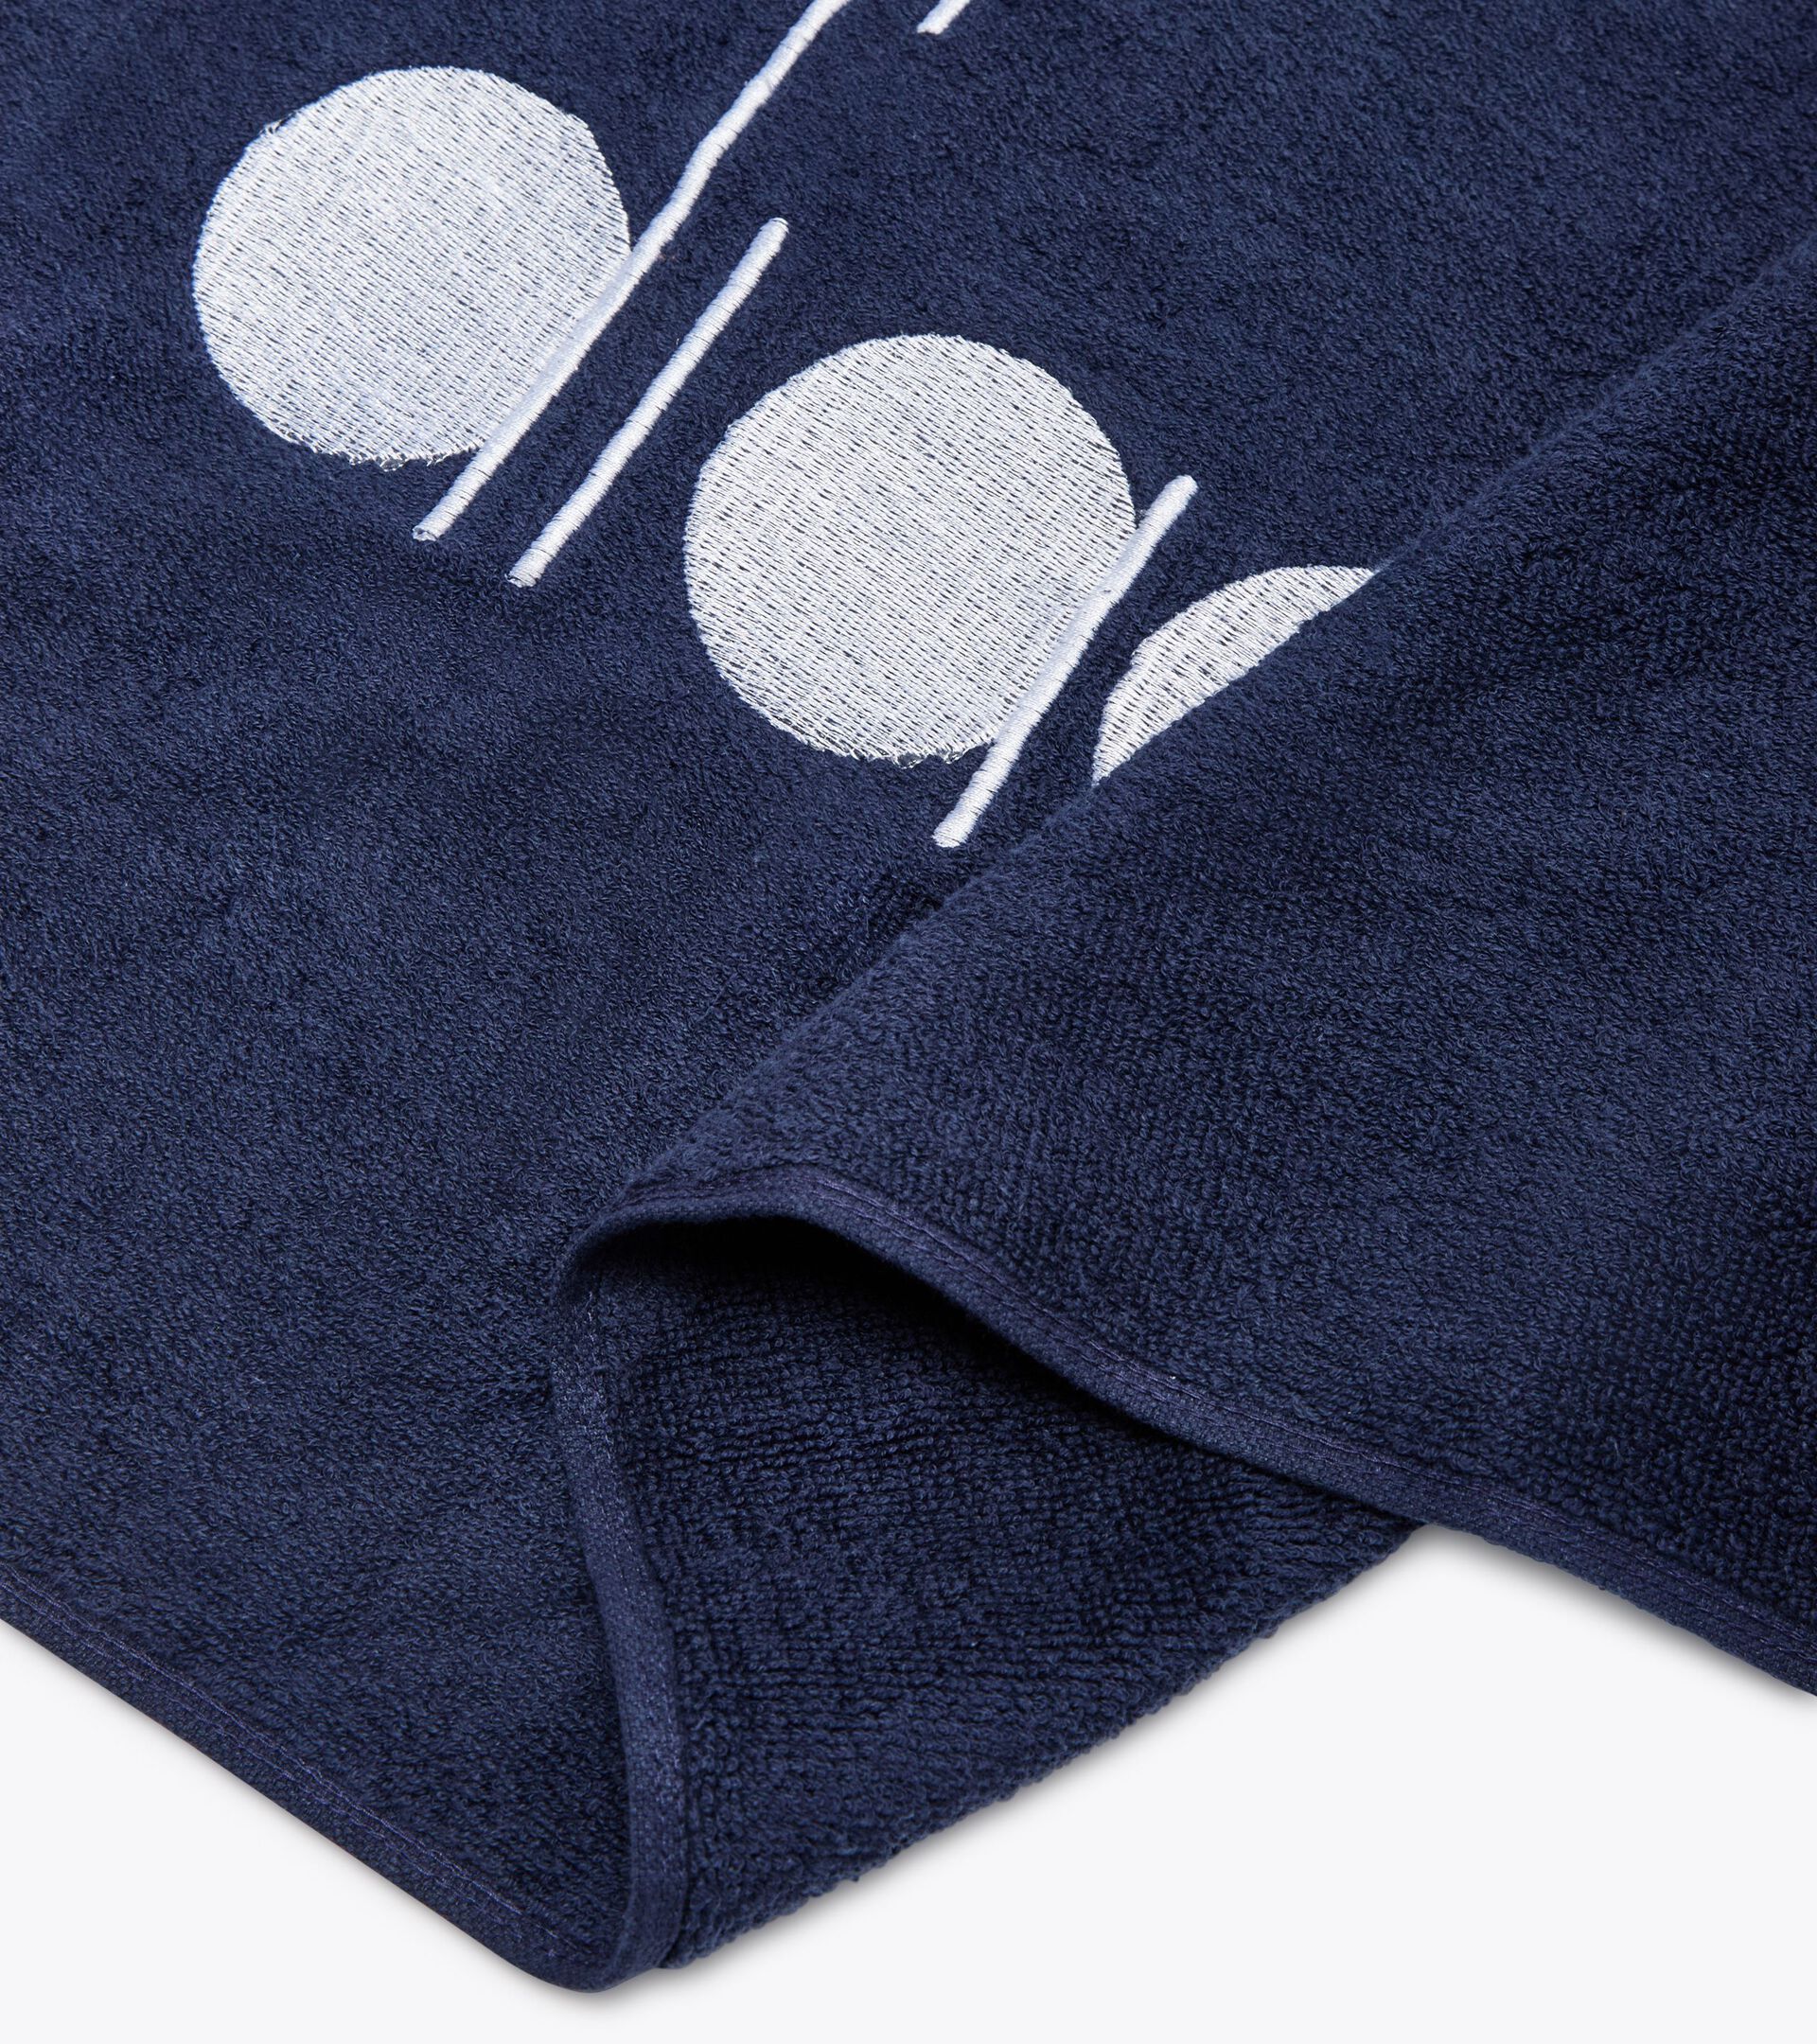 Cotton terry cloth towel TOWEL GYM CLASSIC NAVY - Diadora